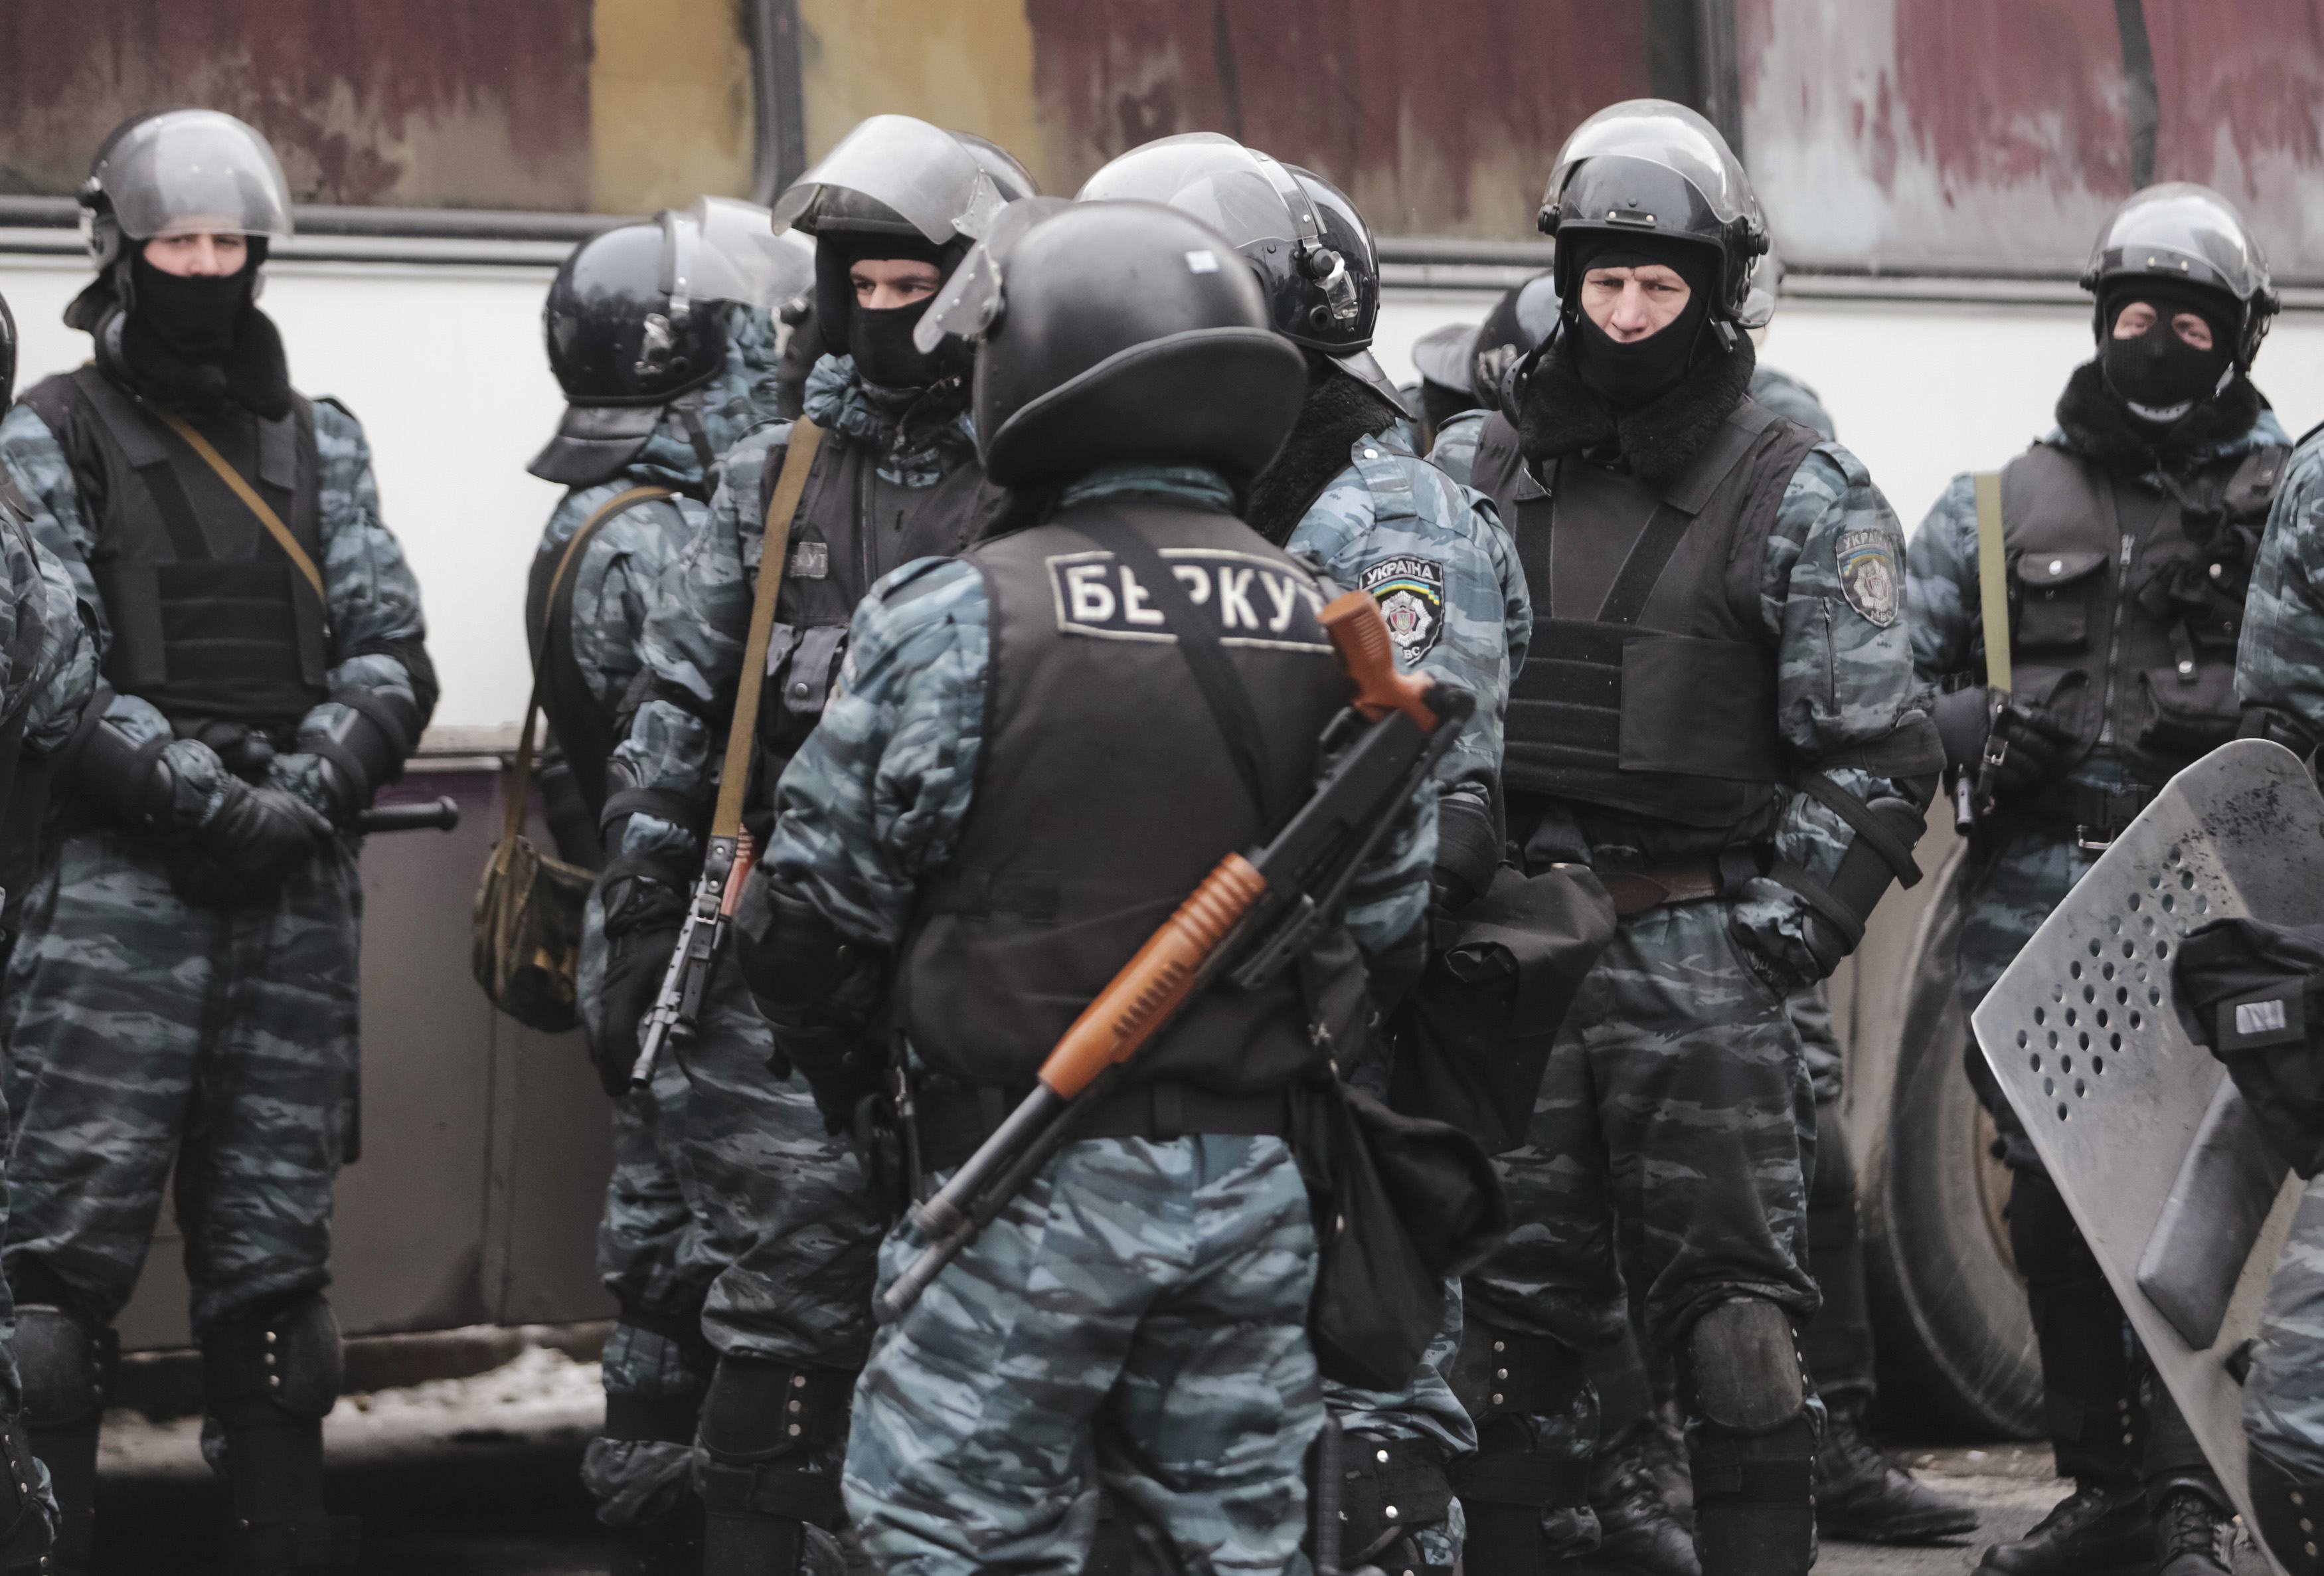 Бывшие николаевские "беркутовцы" теперь служат в рядах белорусской милиции: озвучены сенсационные подробности их участия в минских акциях протеста